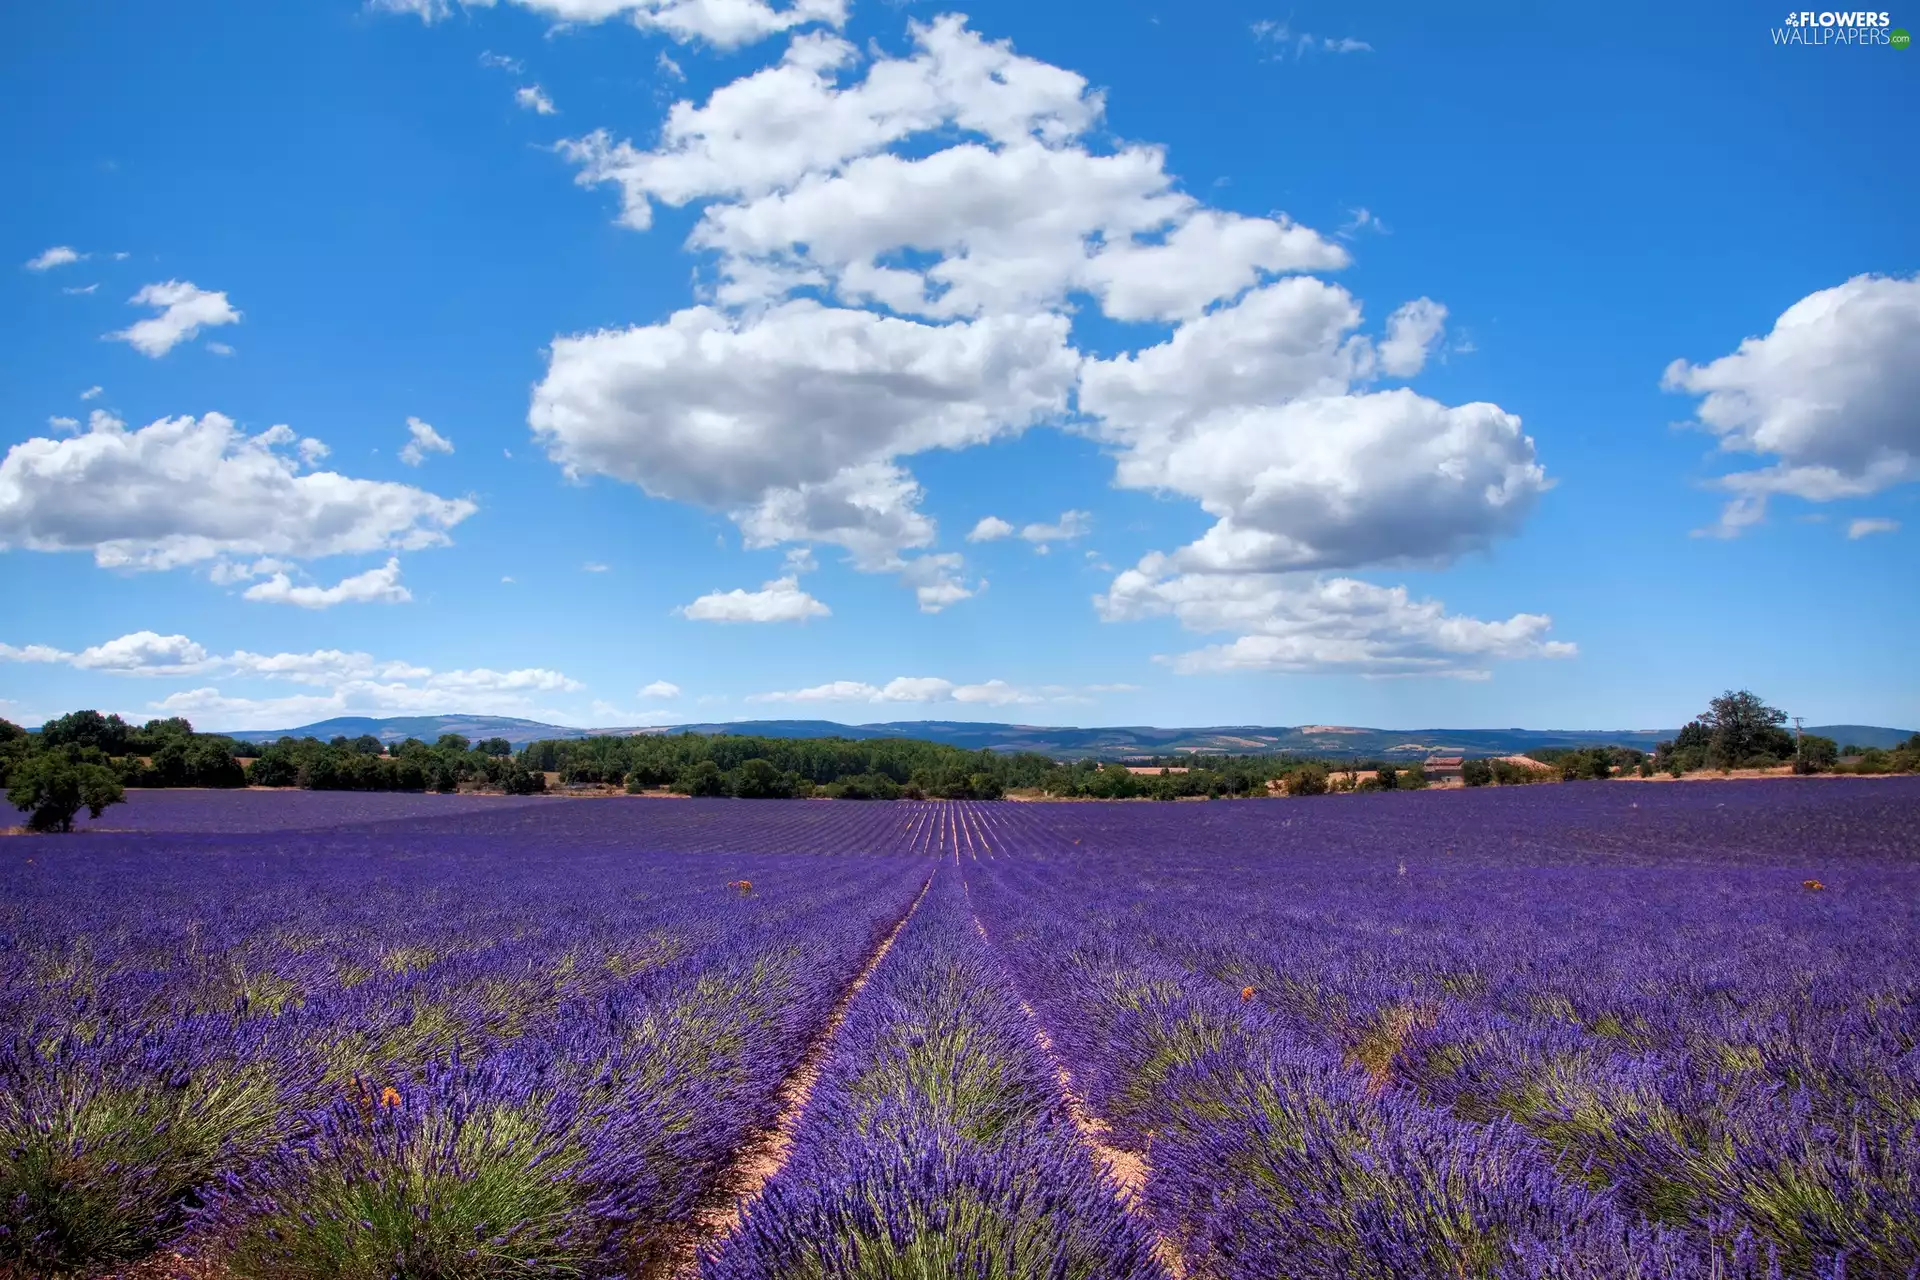 clouds, lavender, Field